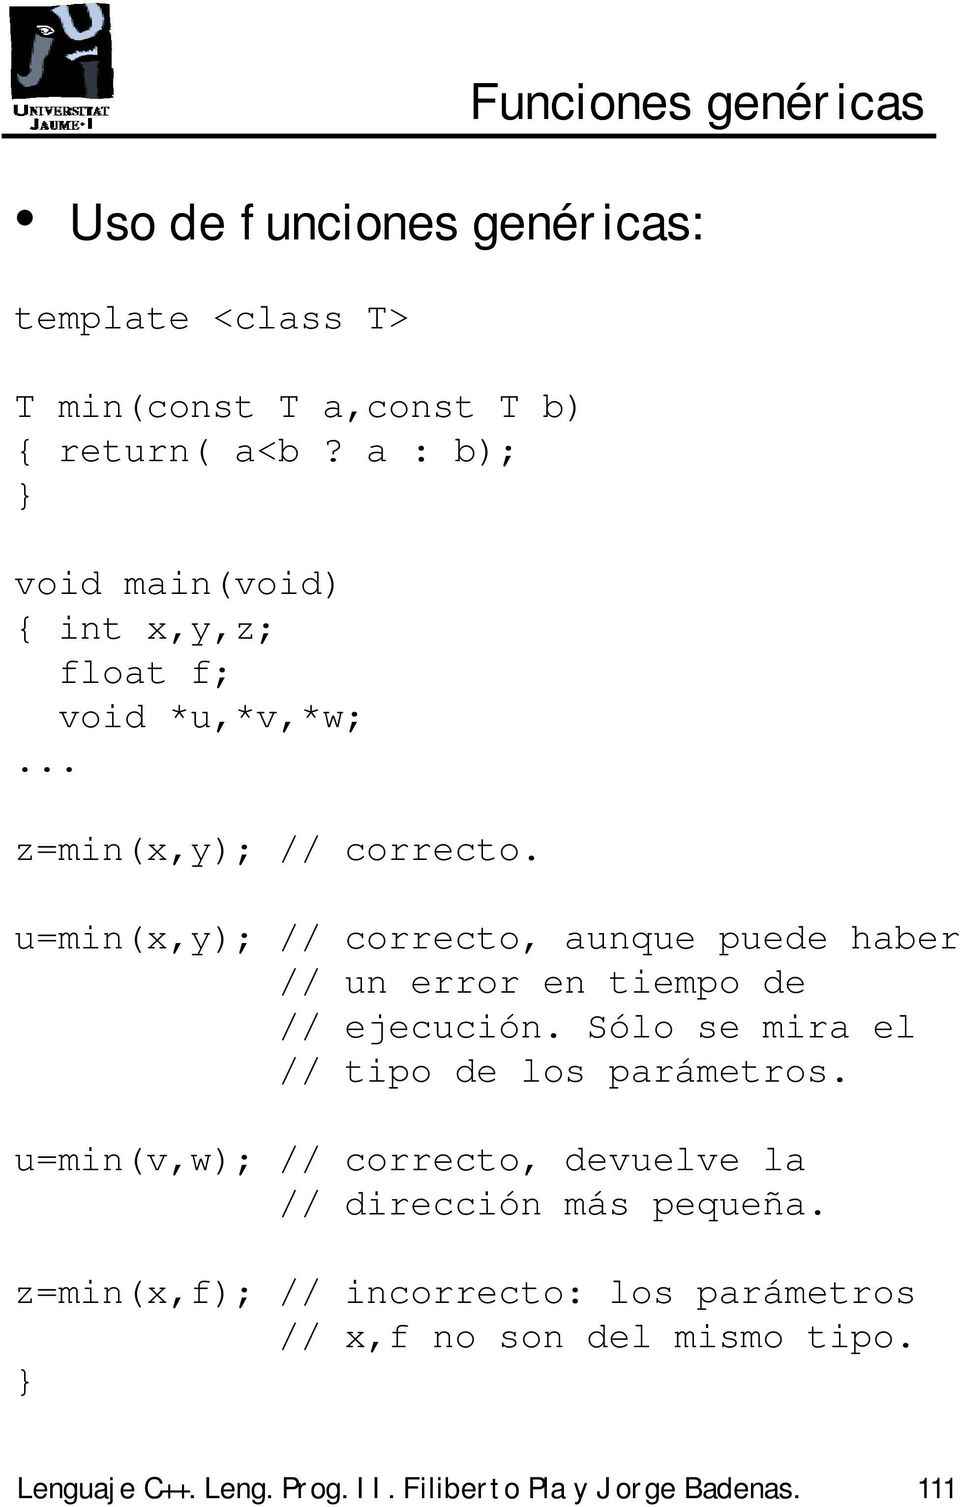 u=min(x,y); // correcto, aunque puede haber // un error en tiempo de // ejecución. Sólo se mira el // tipo de los parámetros.